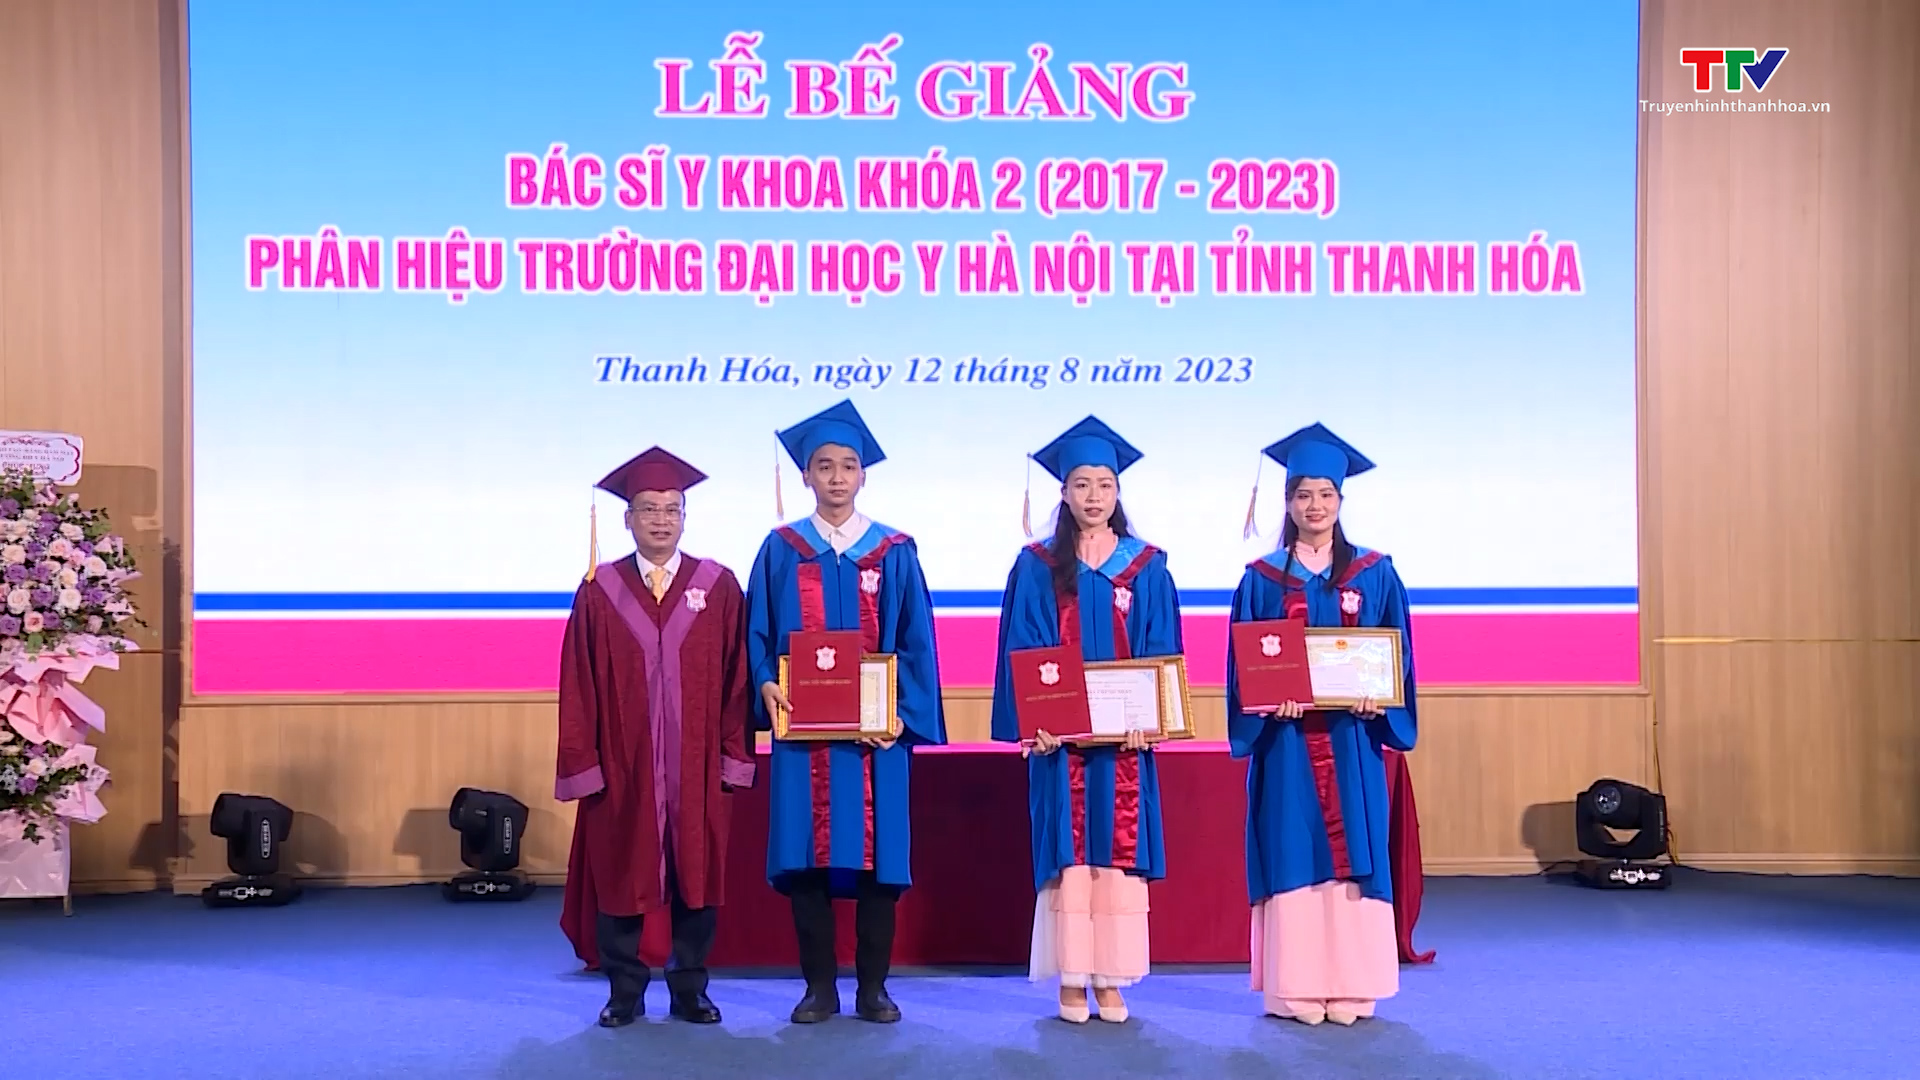 Phân hiệu Trường Đại học Y Hà Nội tại Thanh Hóa bế giảng bác sĩ y khoa khóa 2 - Ảnh 3.